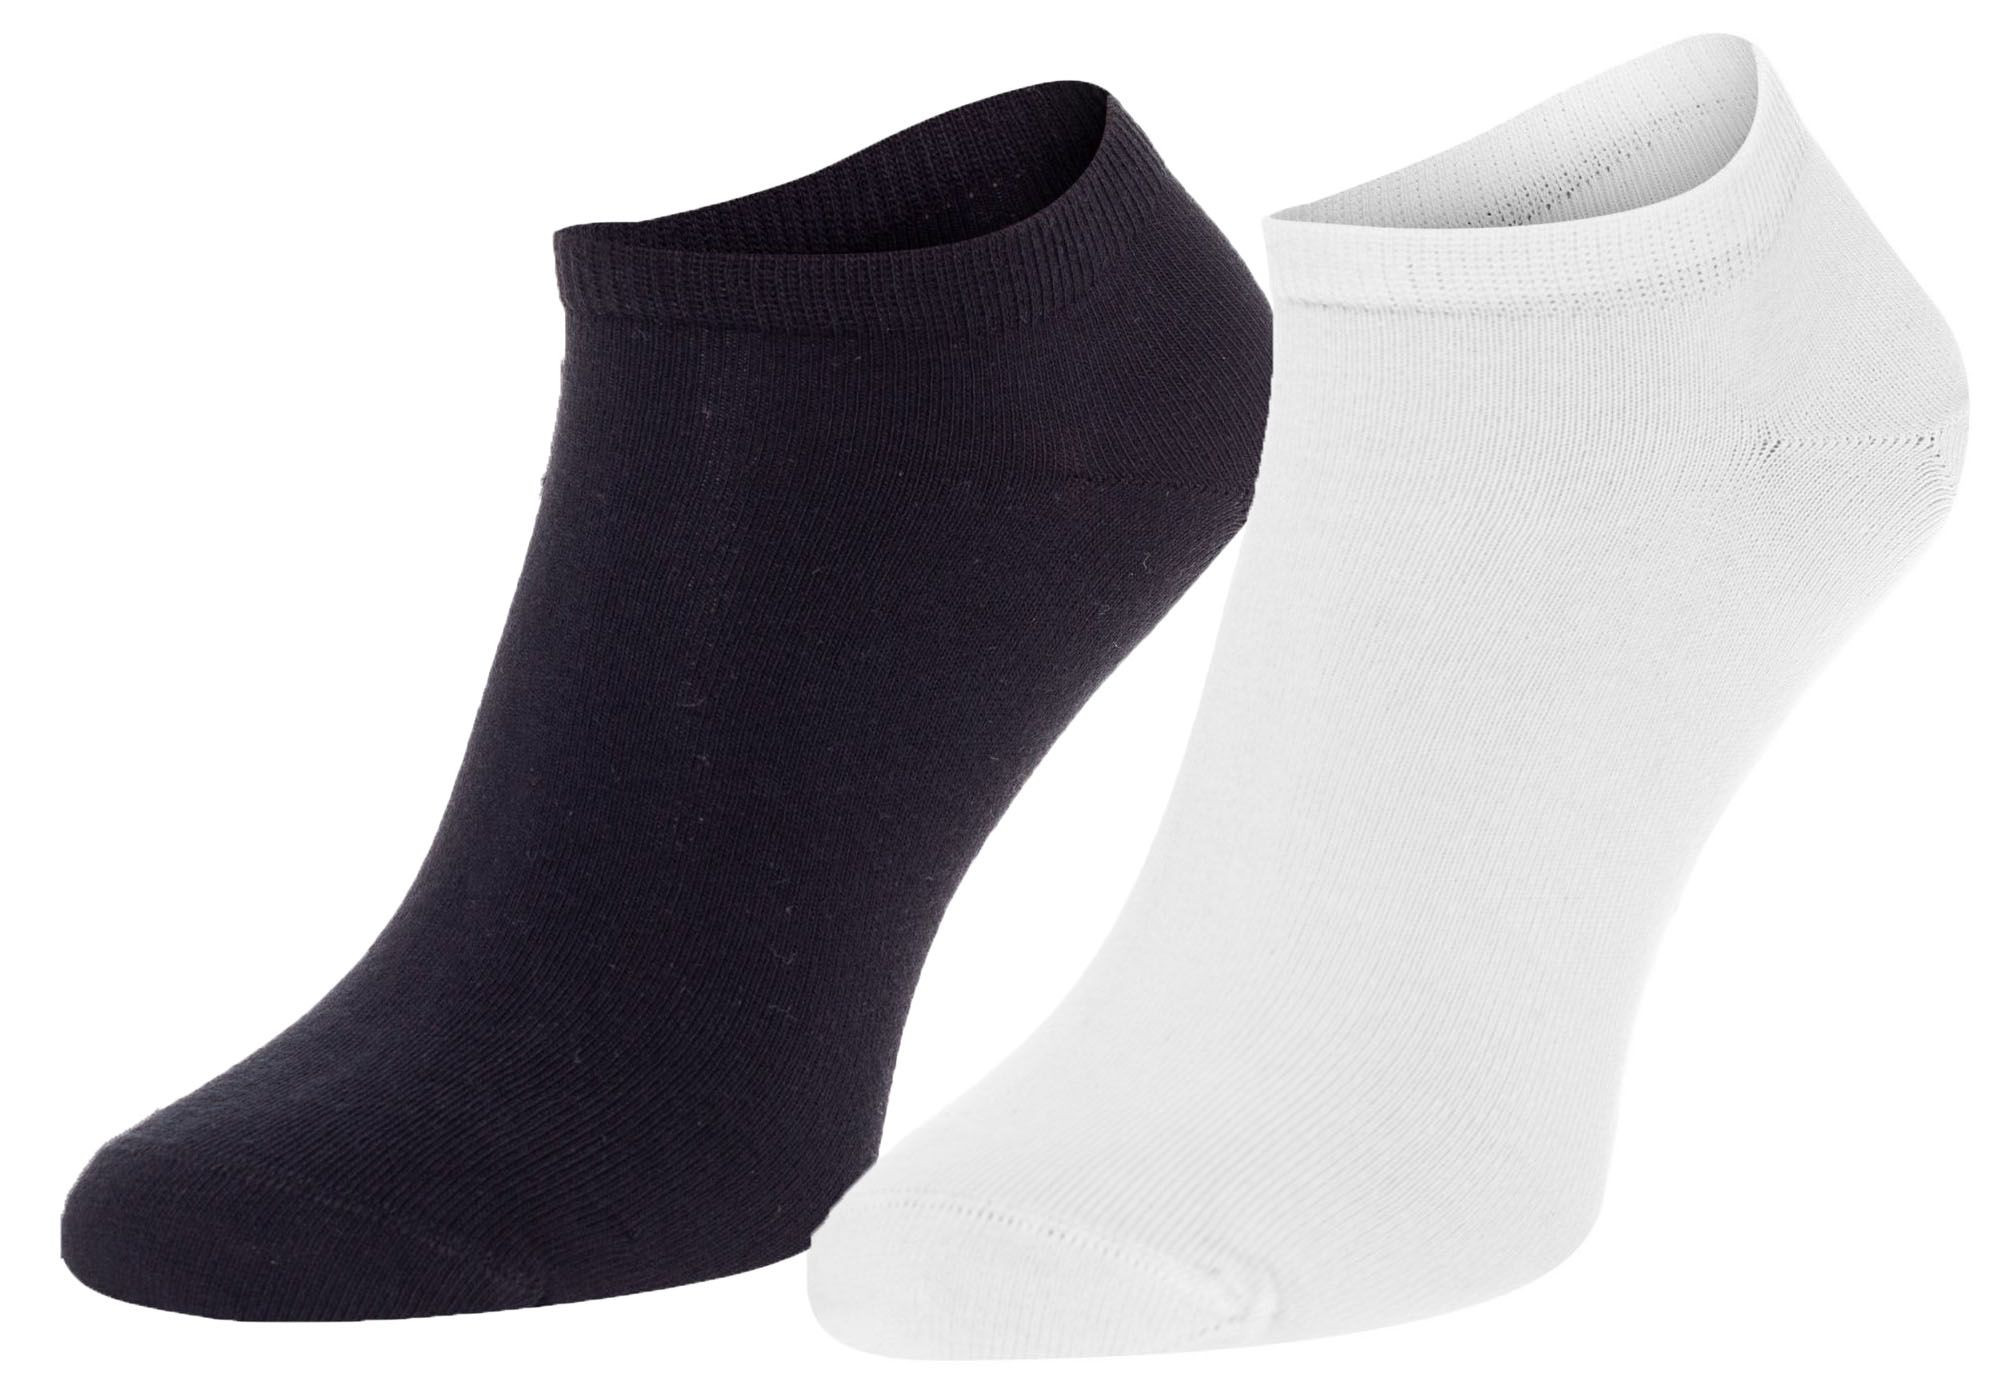 Ponožky Tommy Hilfiger 2Pack 342023001 Black/White 43-46